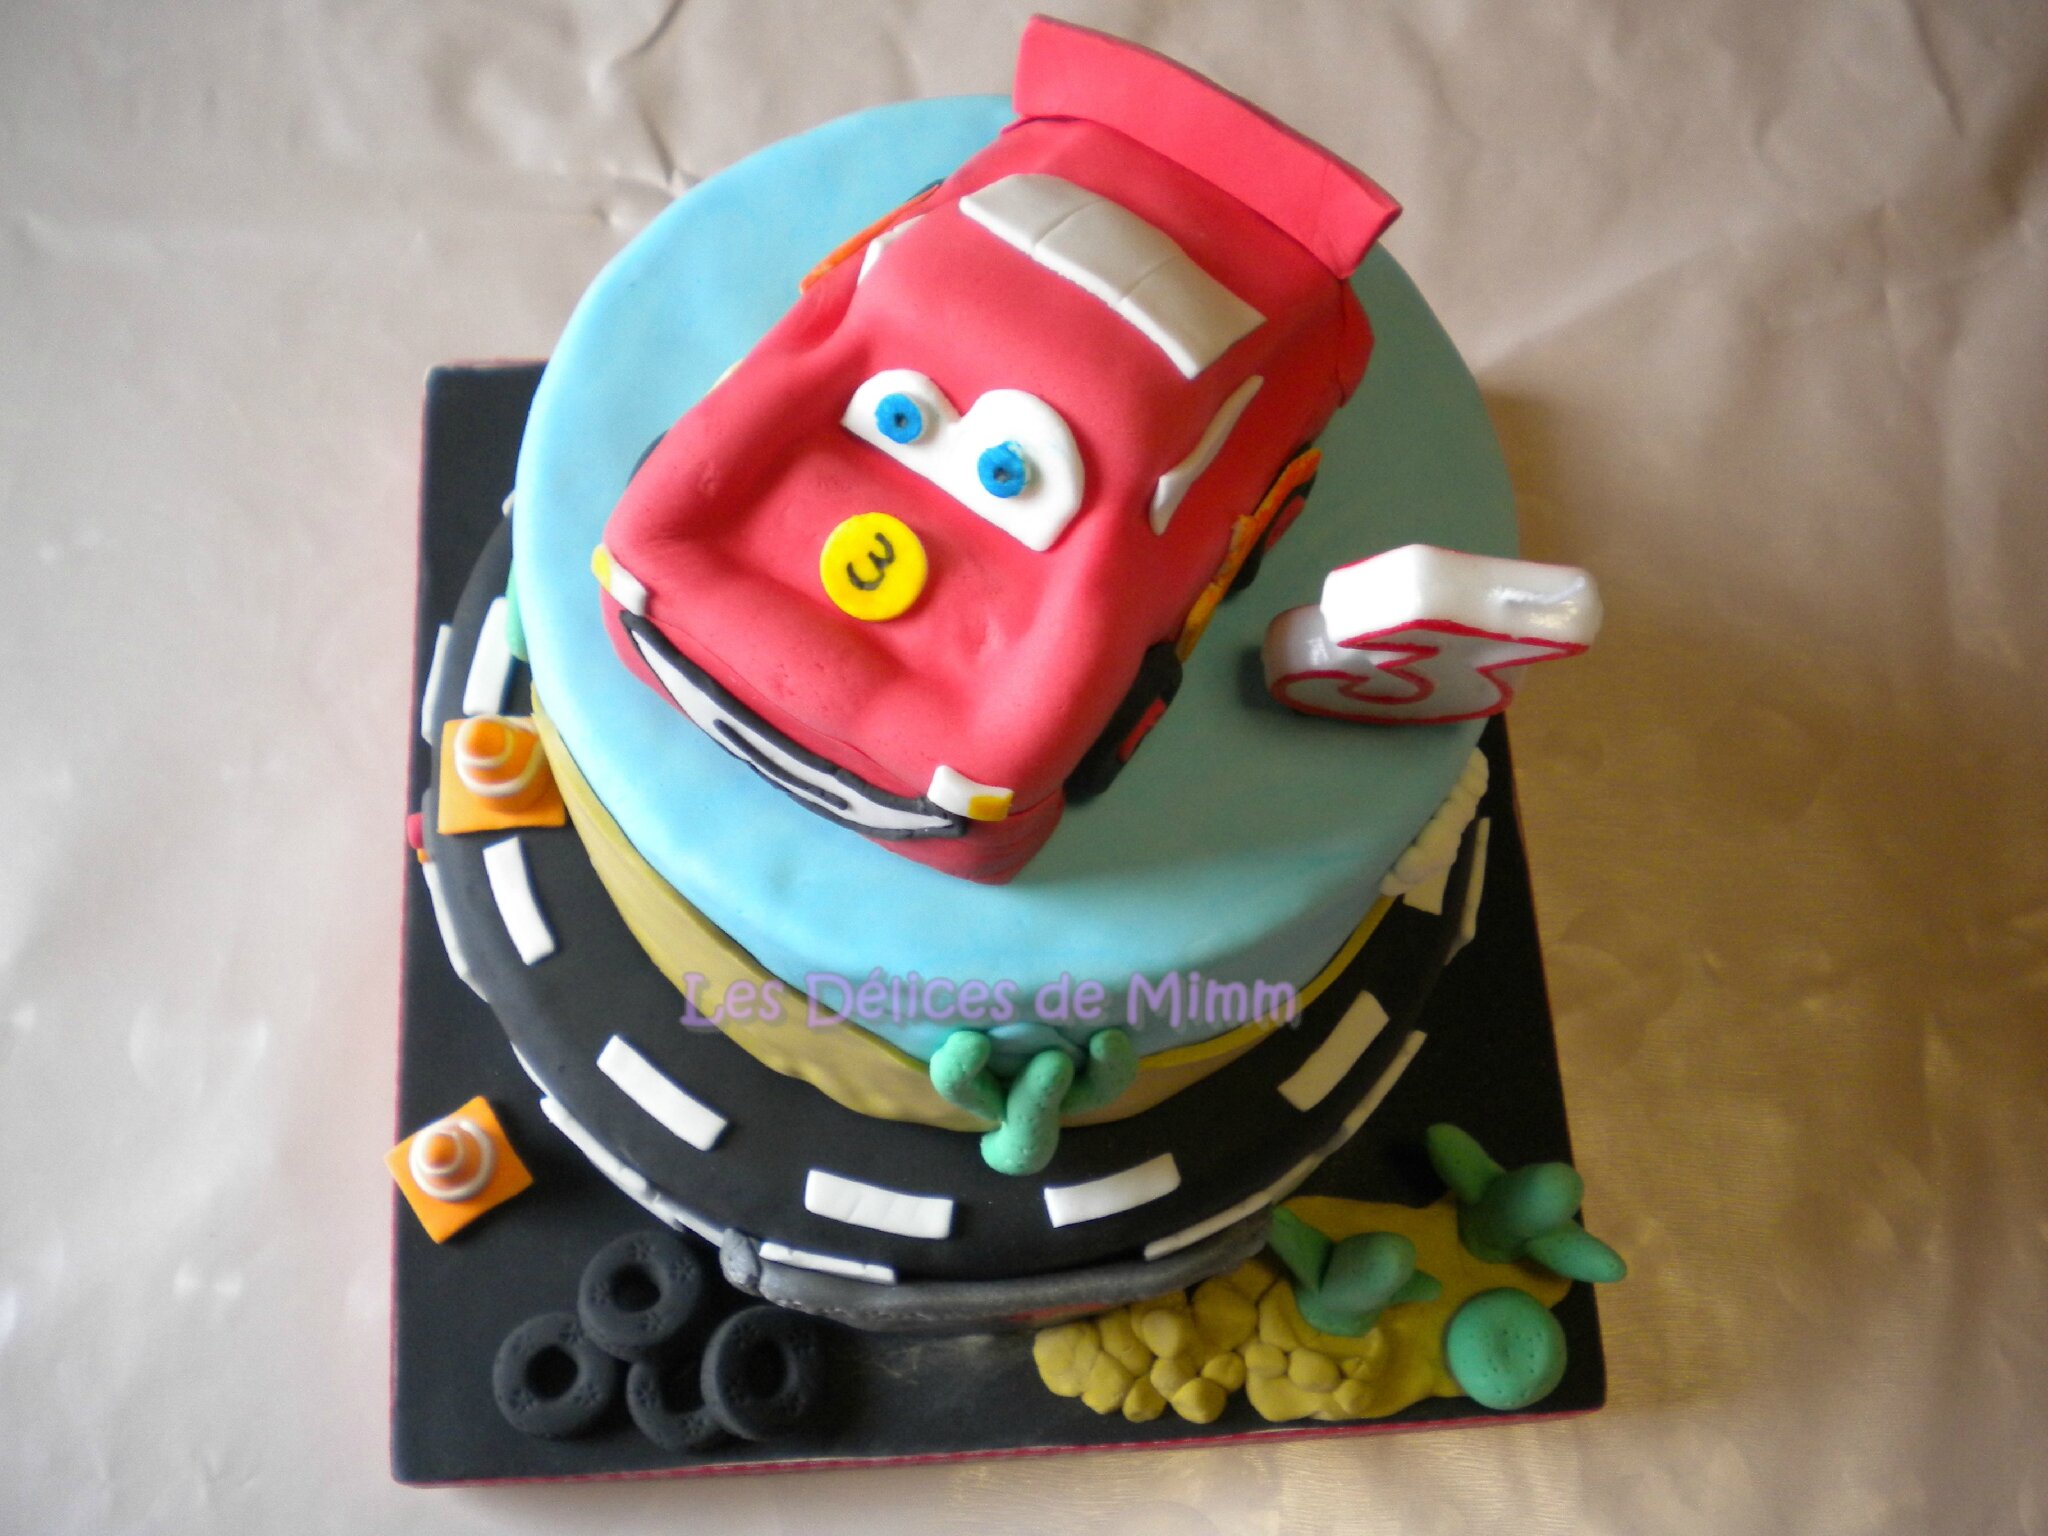 Comment faire gâteau d'anniversaire façon Cars (décoration en pâte à sucre)  